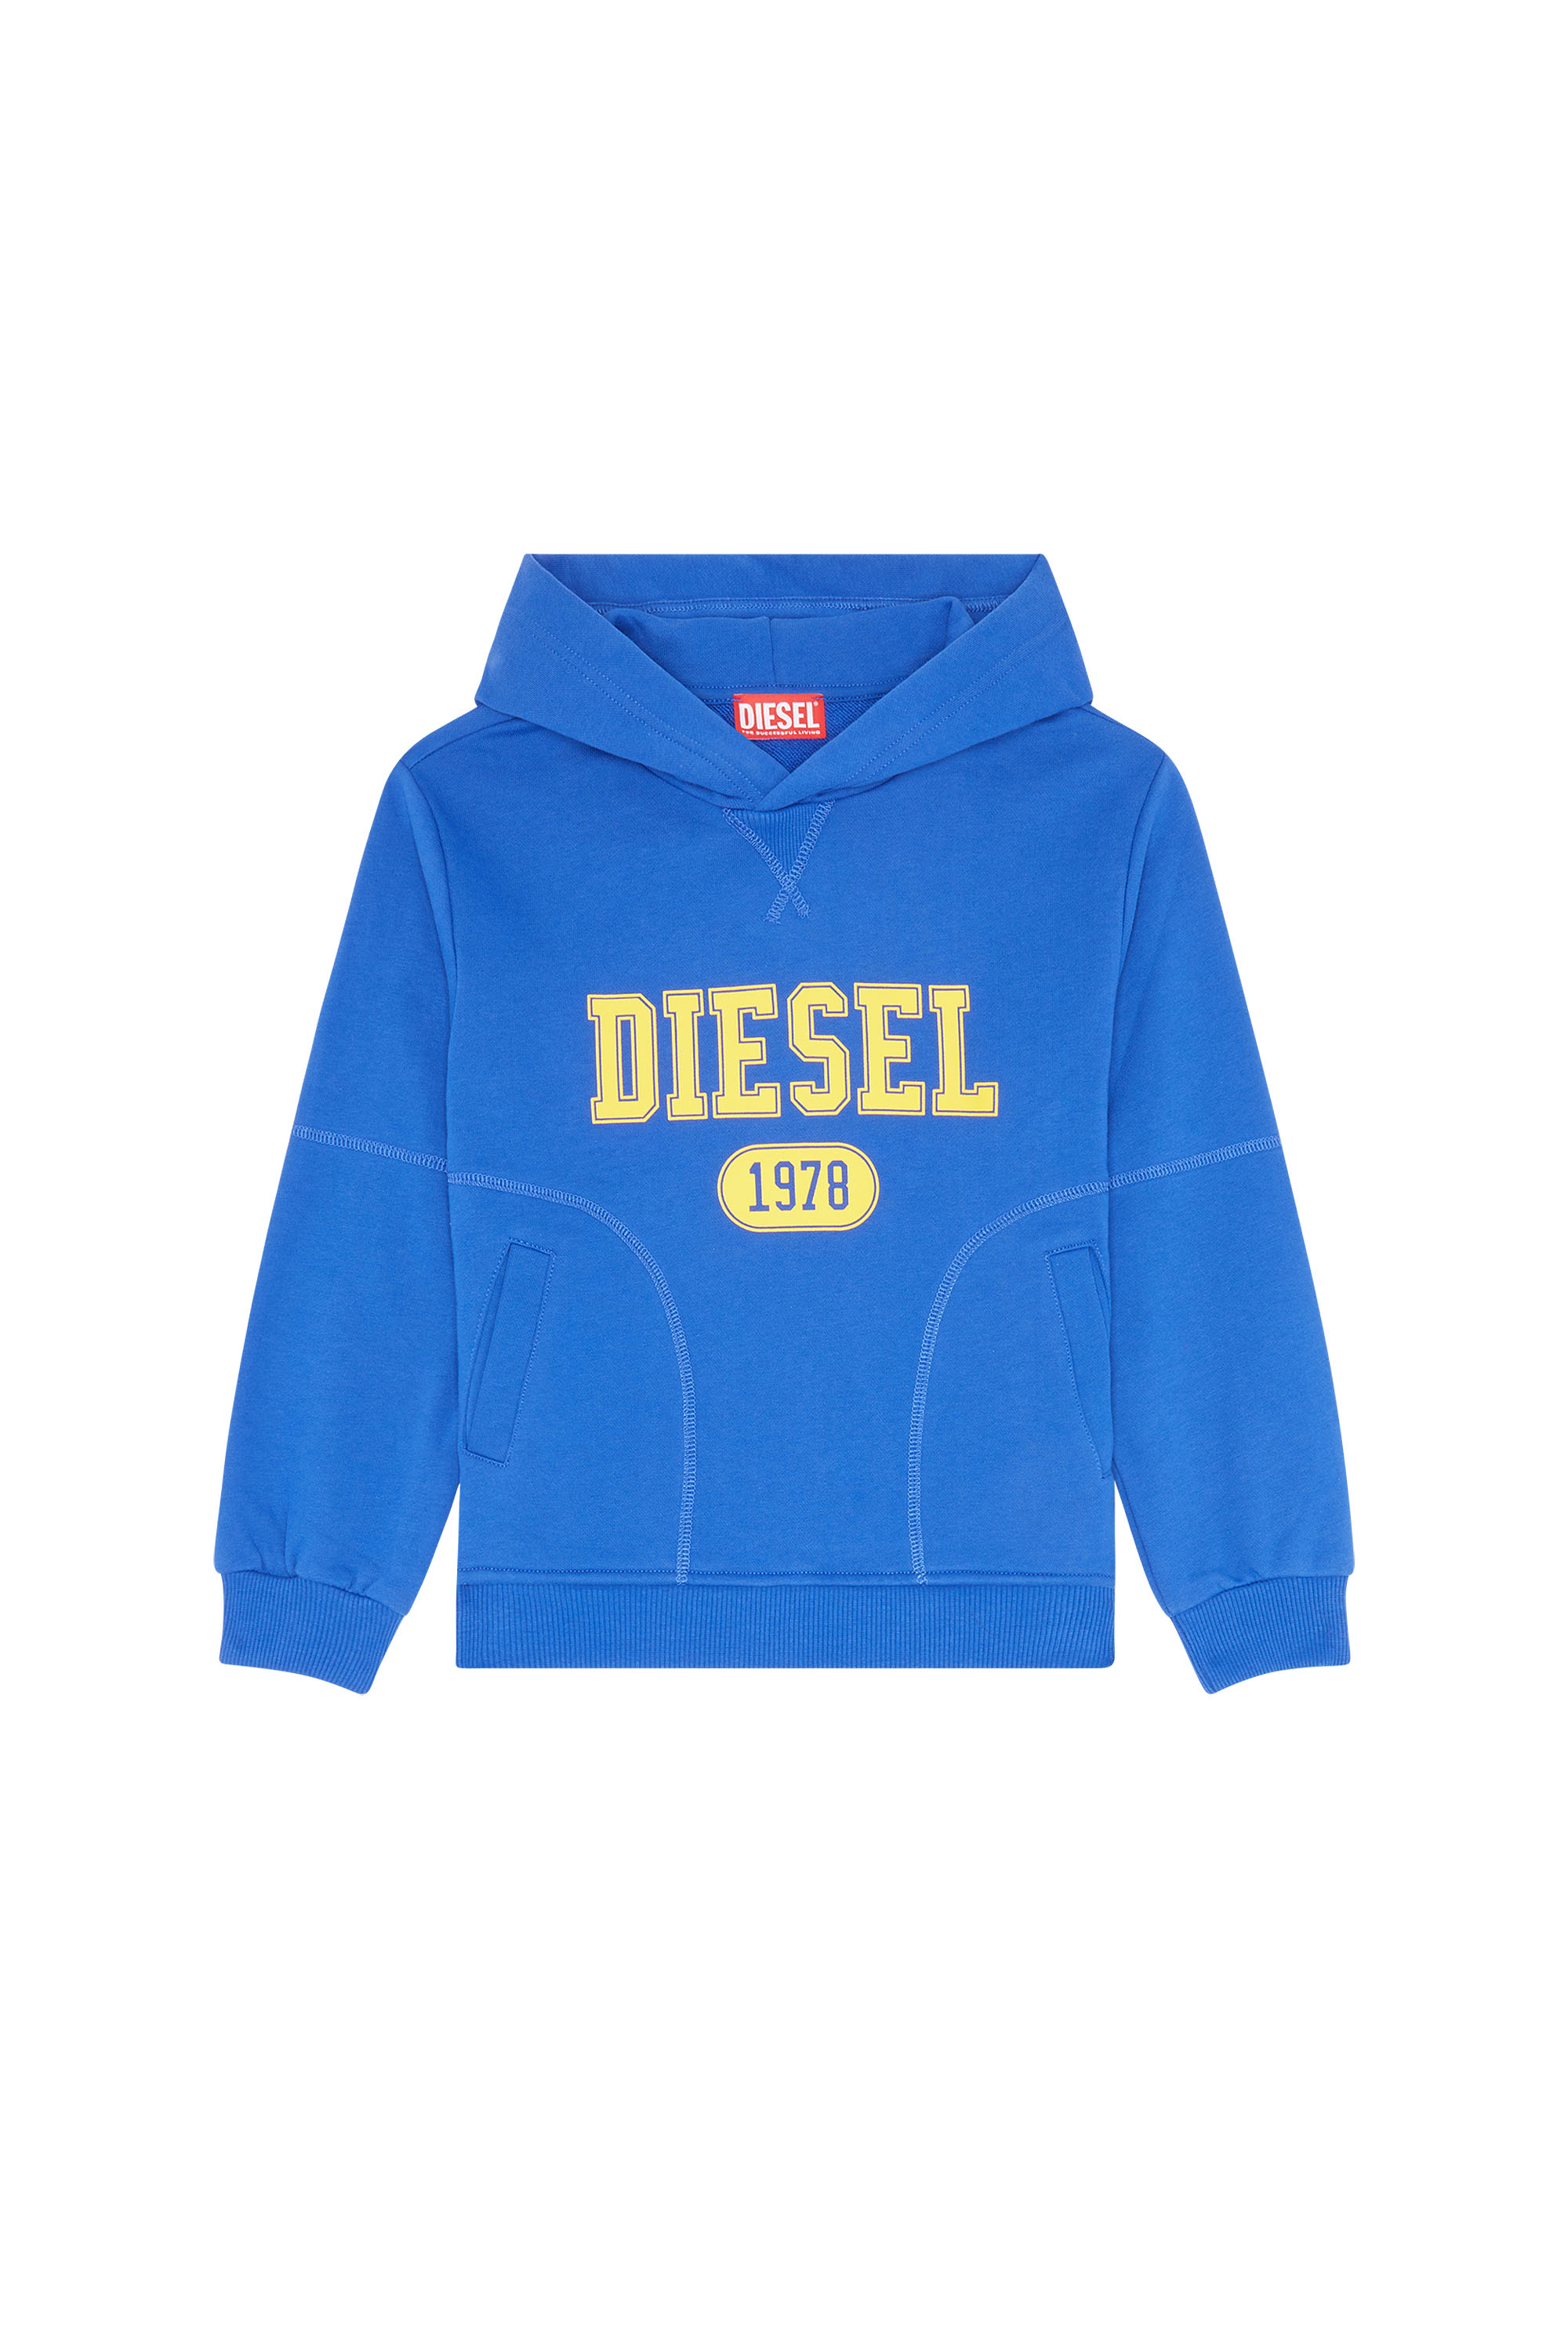 Diesel - SMUSTER OVER, Blau - Image 1